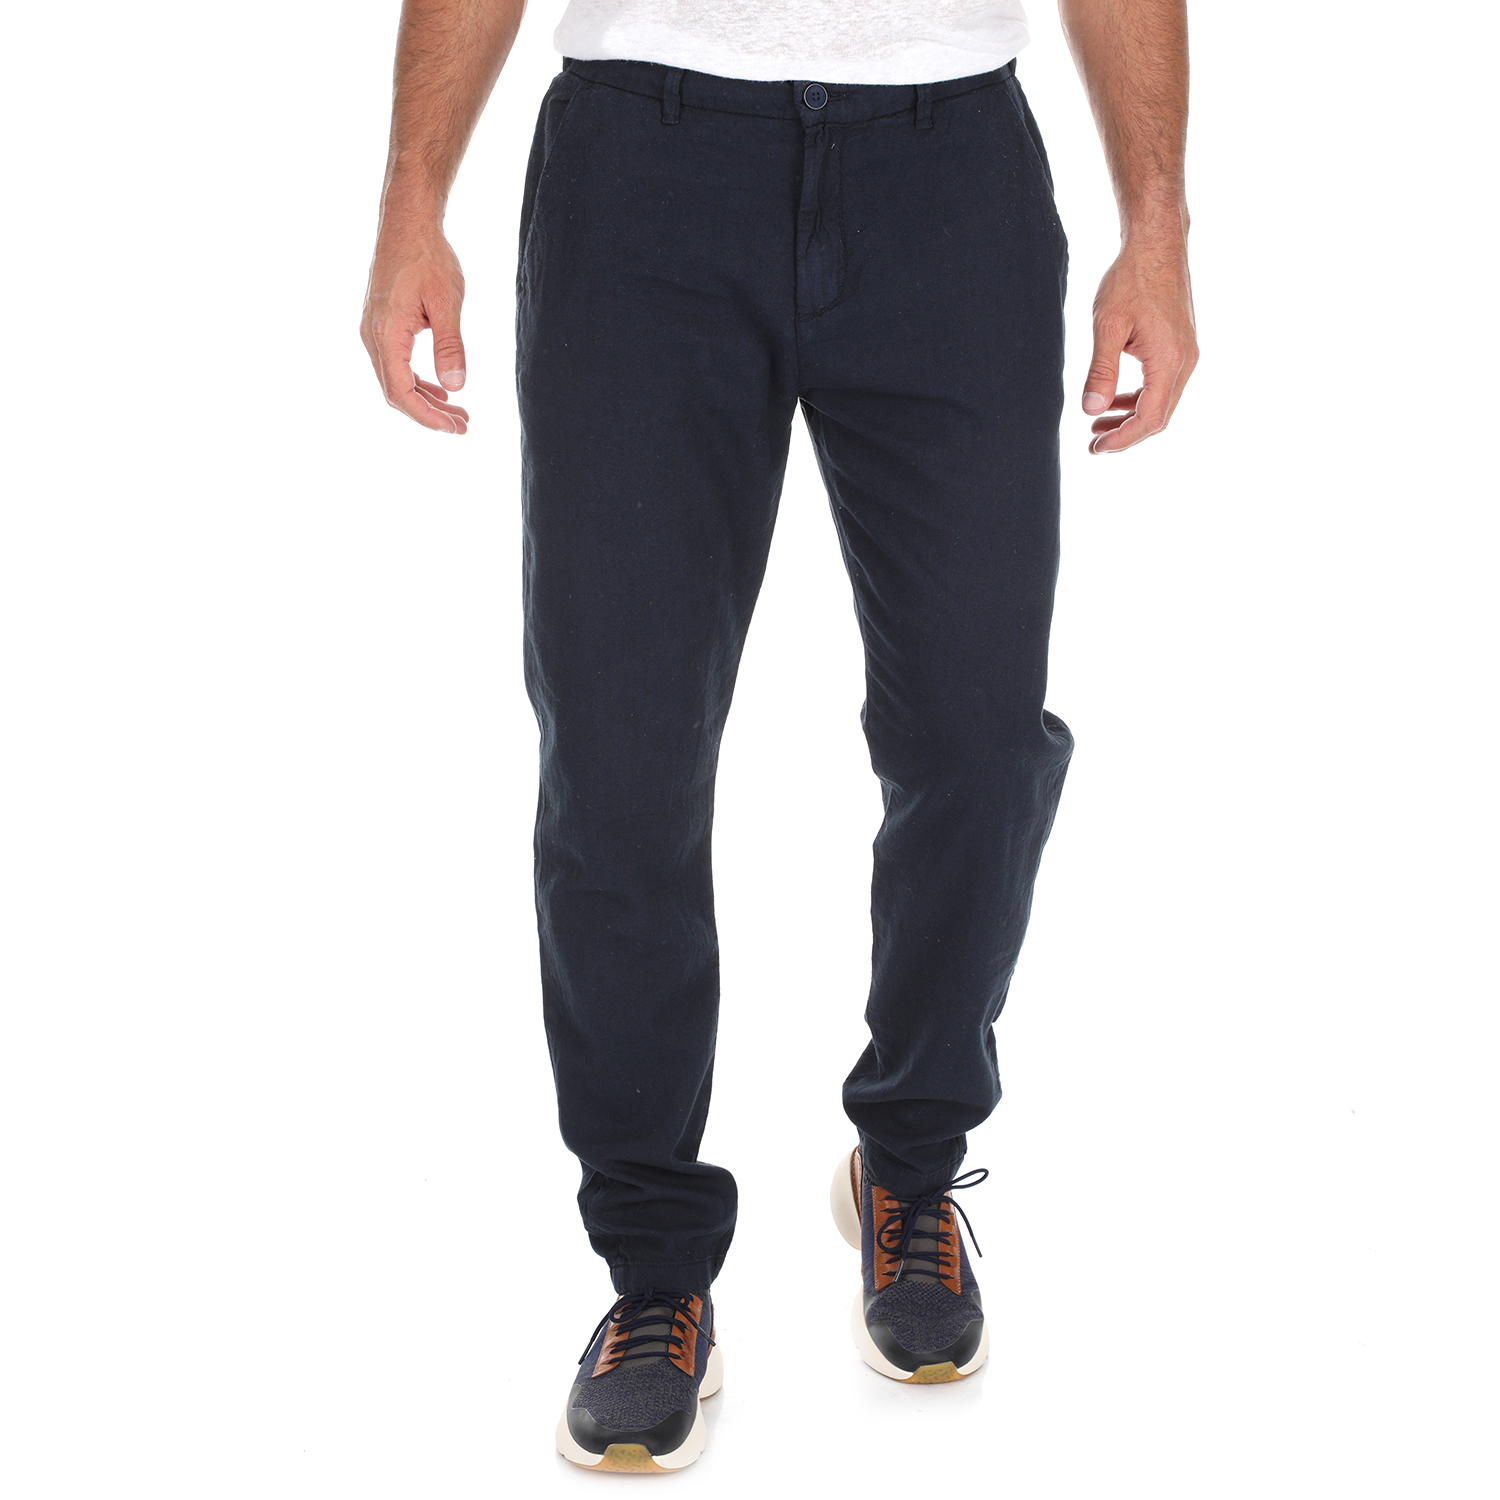 Ανδρικά/Ρούχα/Παντελόνια/Casual SSEINSE - Ανδρικό παντελόνι SSEINSE AMERICA μπλε